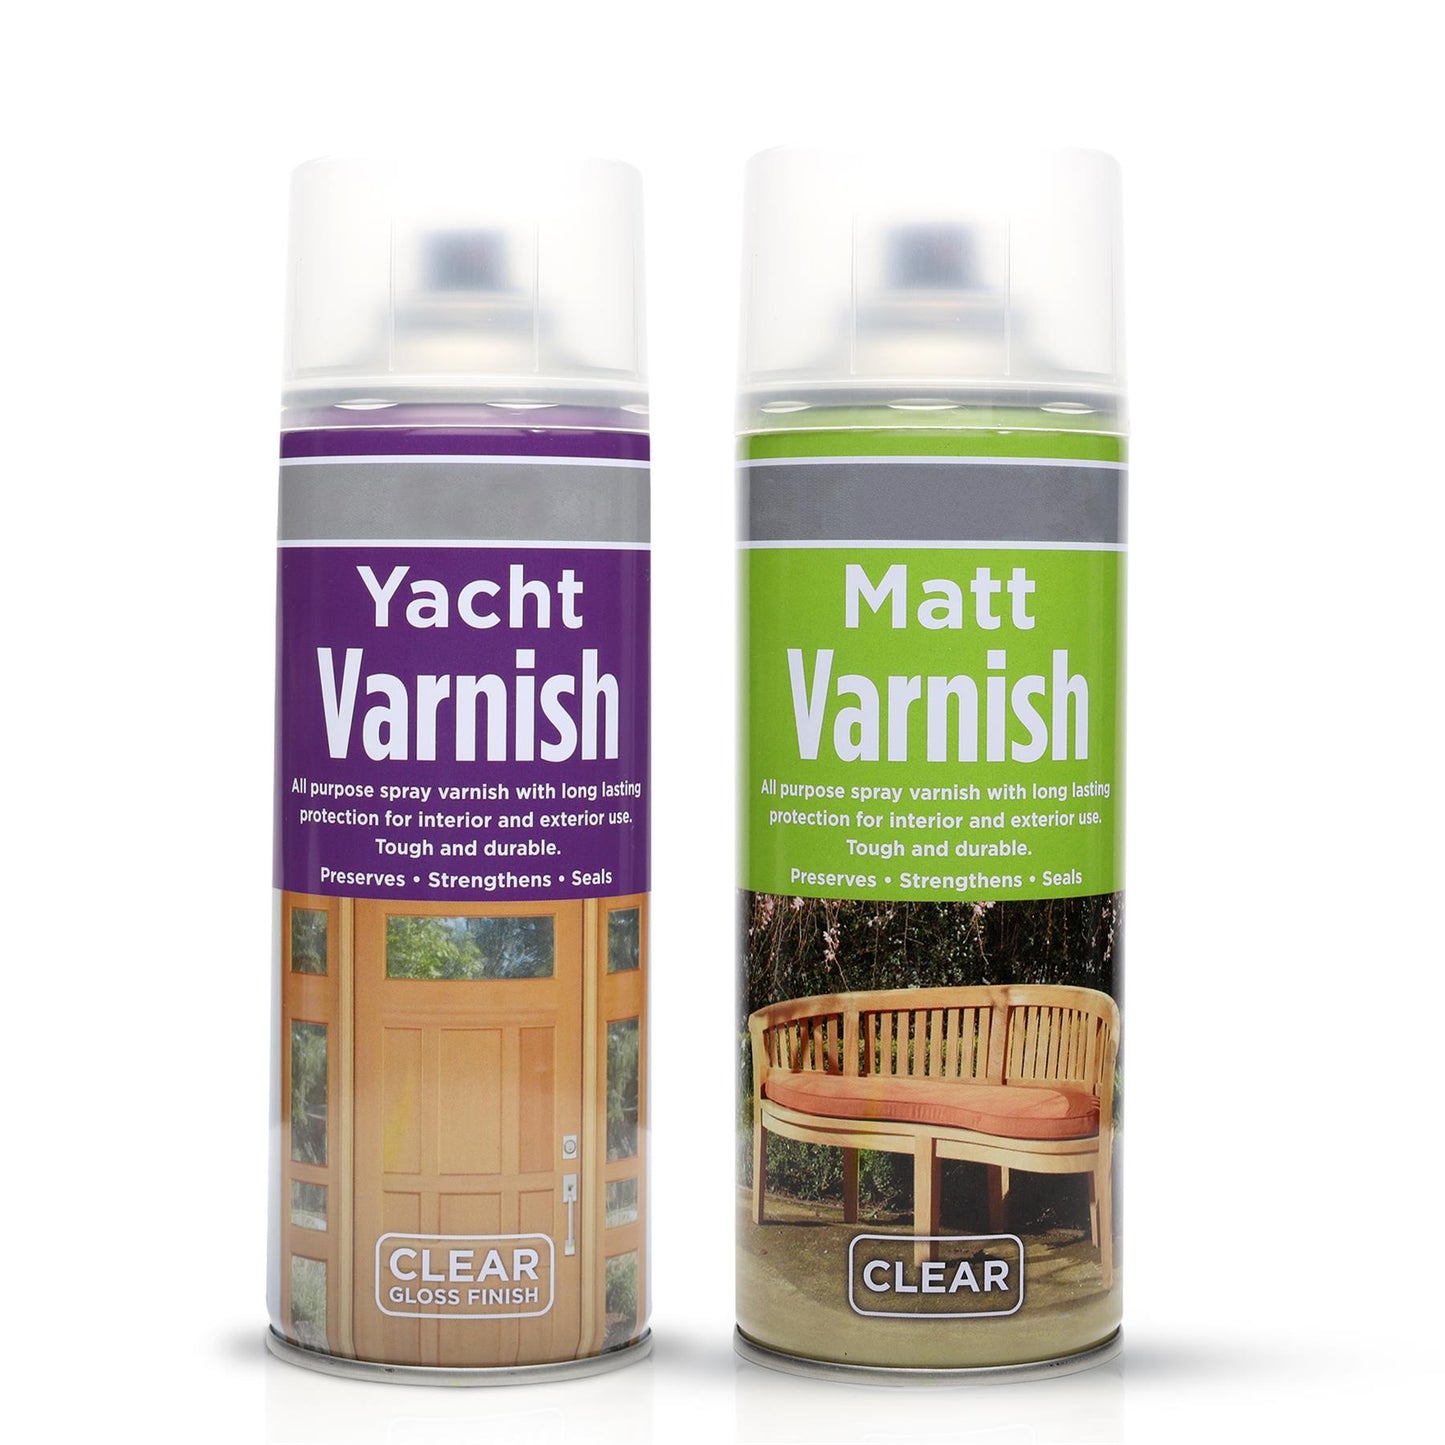 Yacht Varnish Spray 400ml